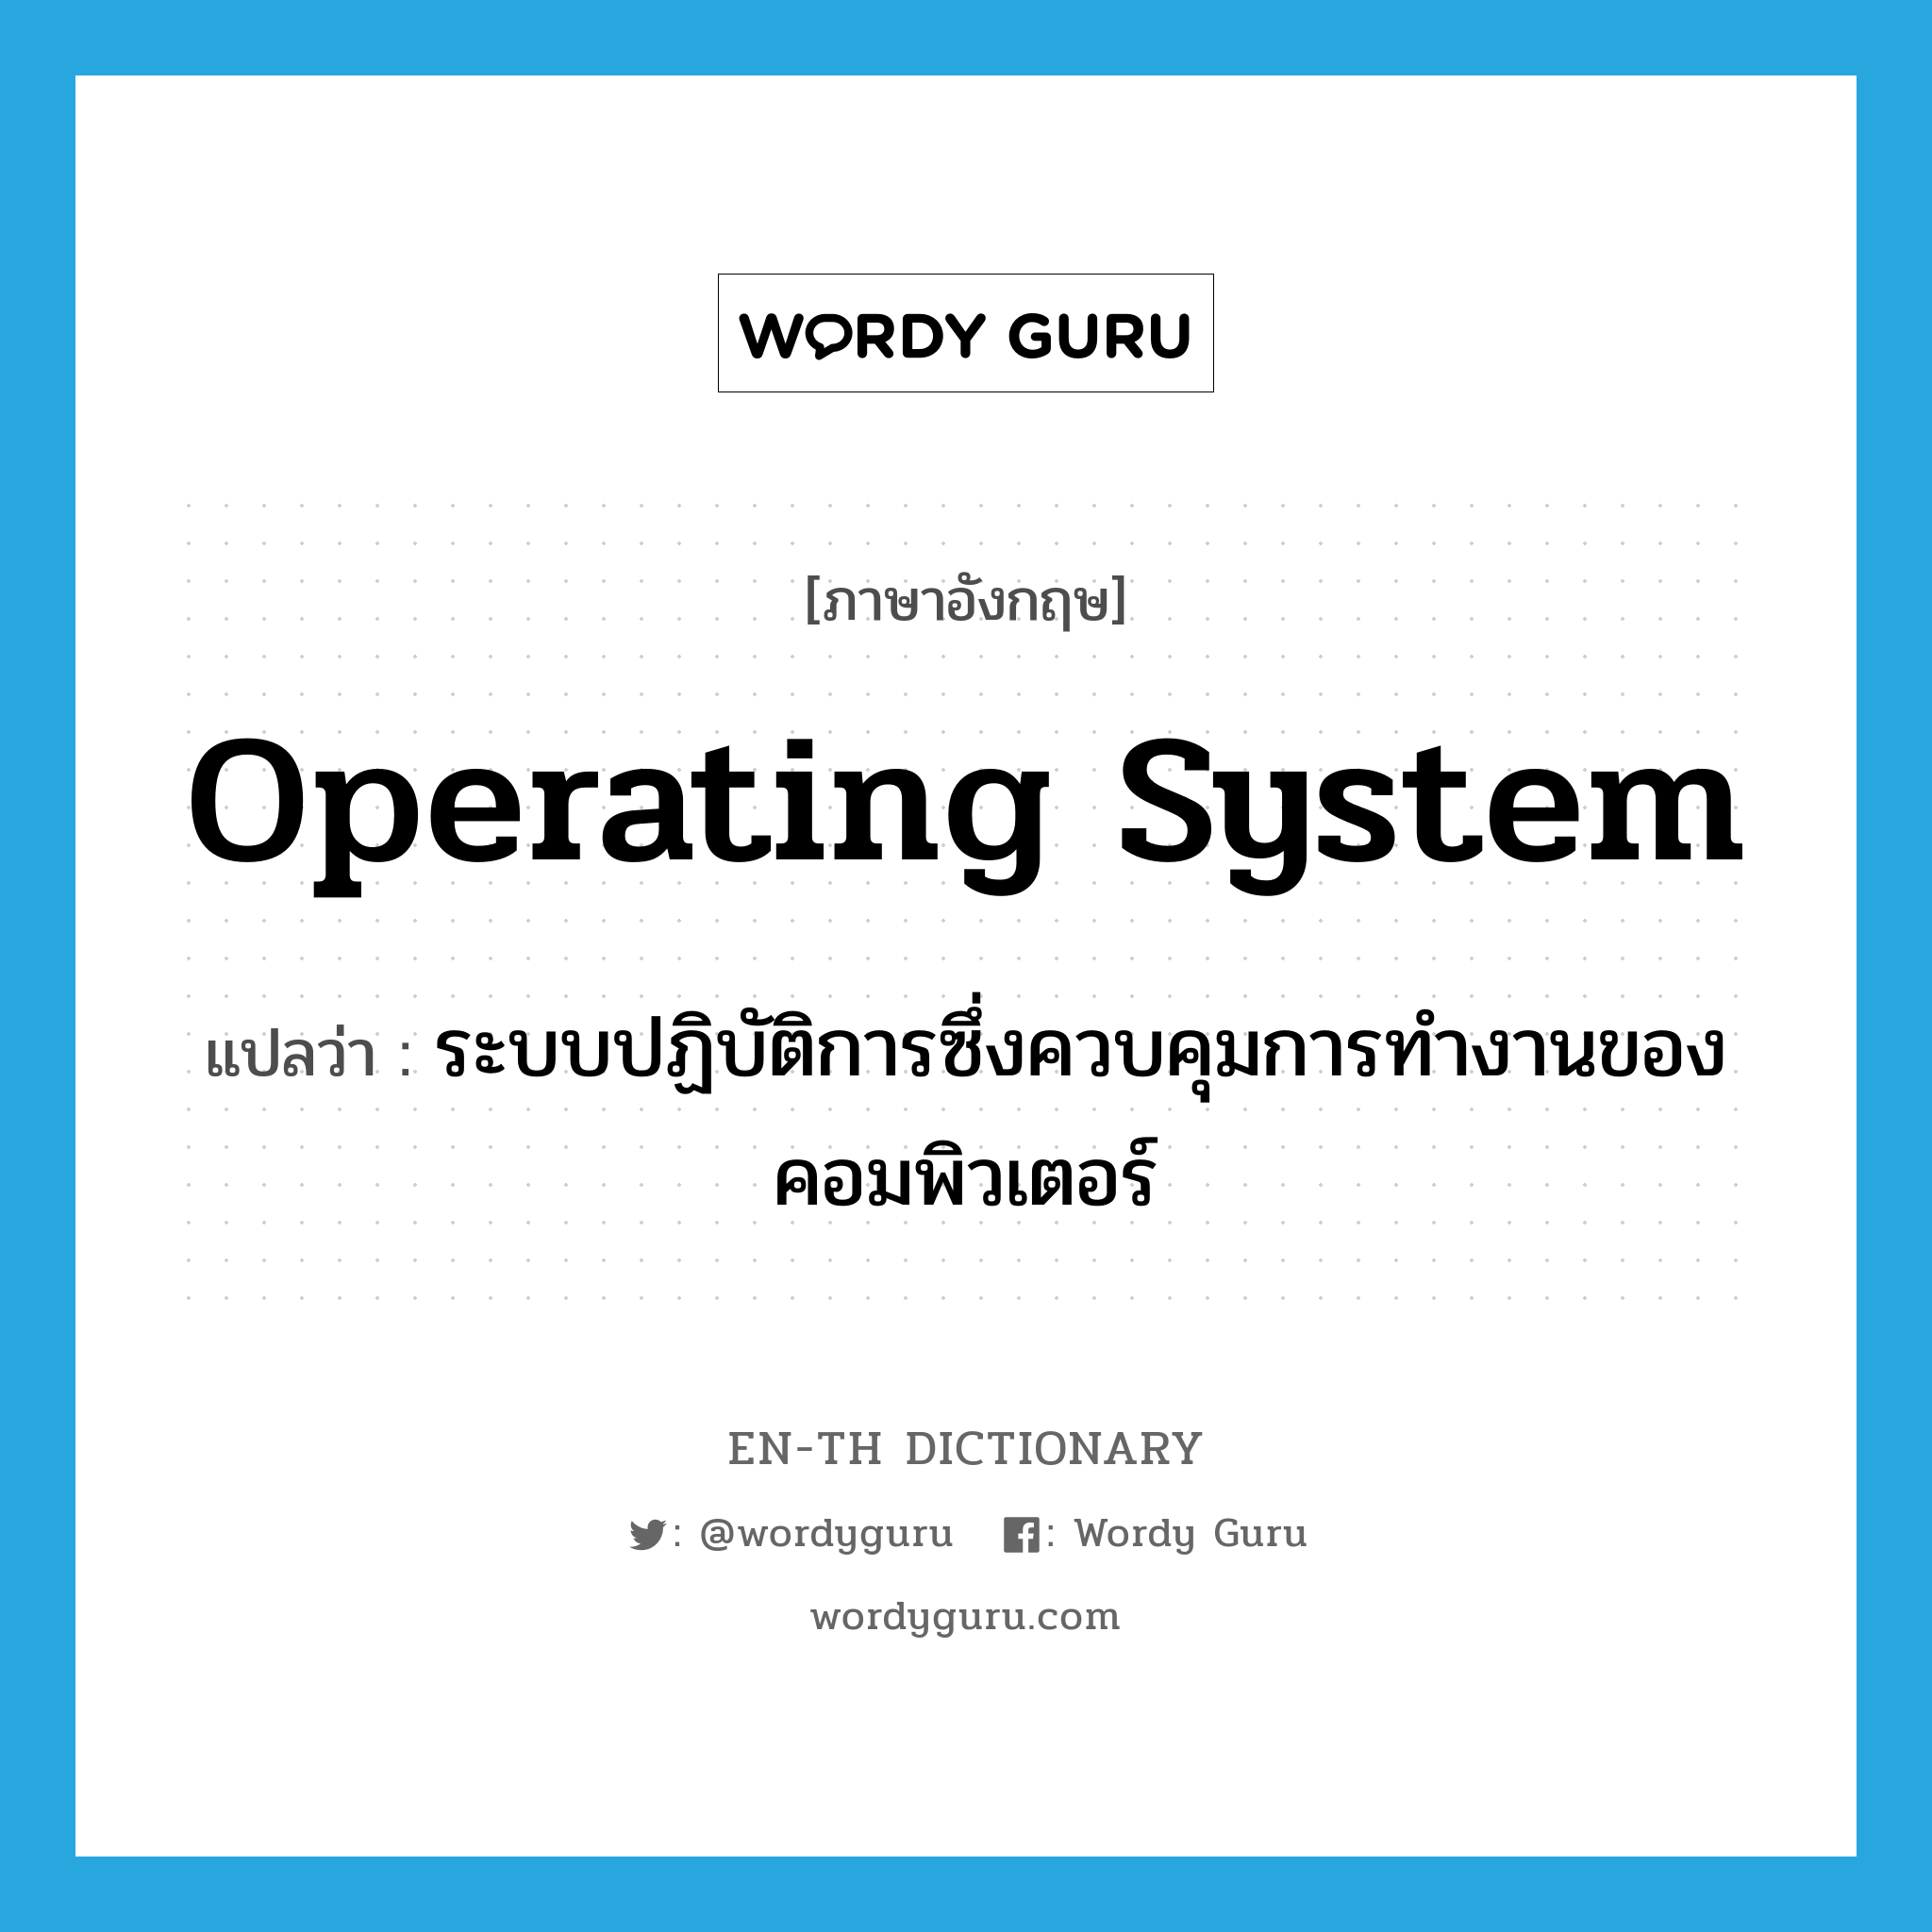 operating system แปลว่า?, คำศัพท์ภาษาอังกฤษ operating system แปลว่า ระบบปฏิบัติการซึ่งควบคุมการทำงานของคอมพิวเตอร์ ประเภท N หมวด N